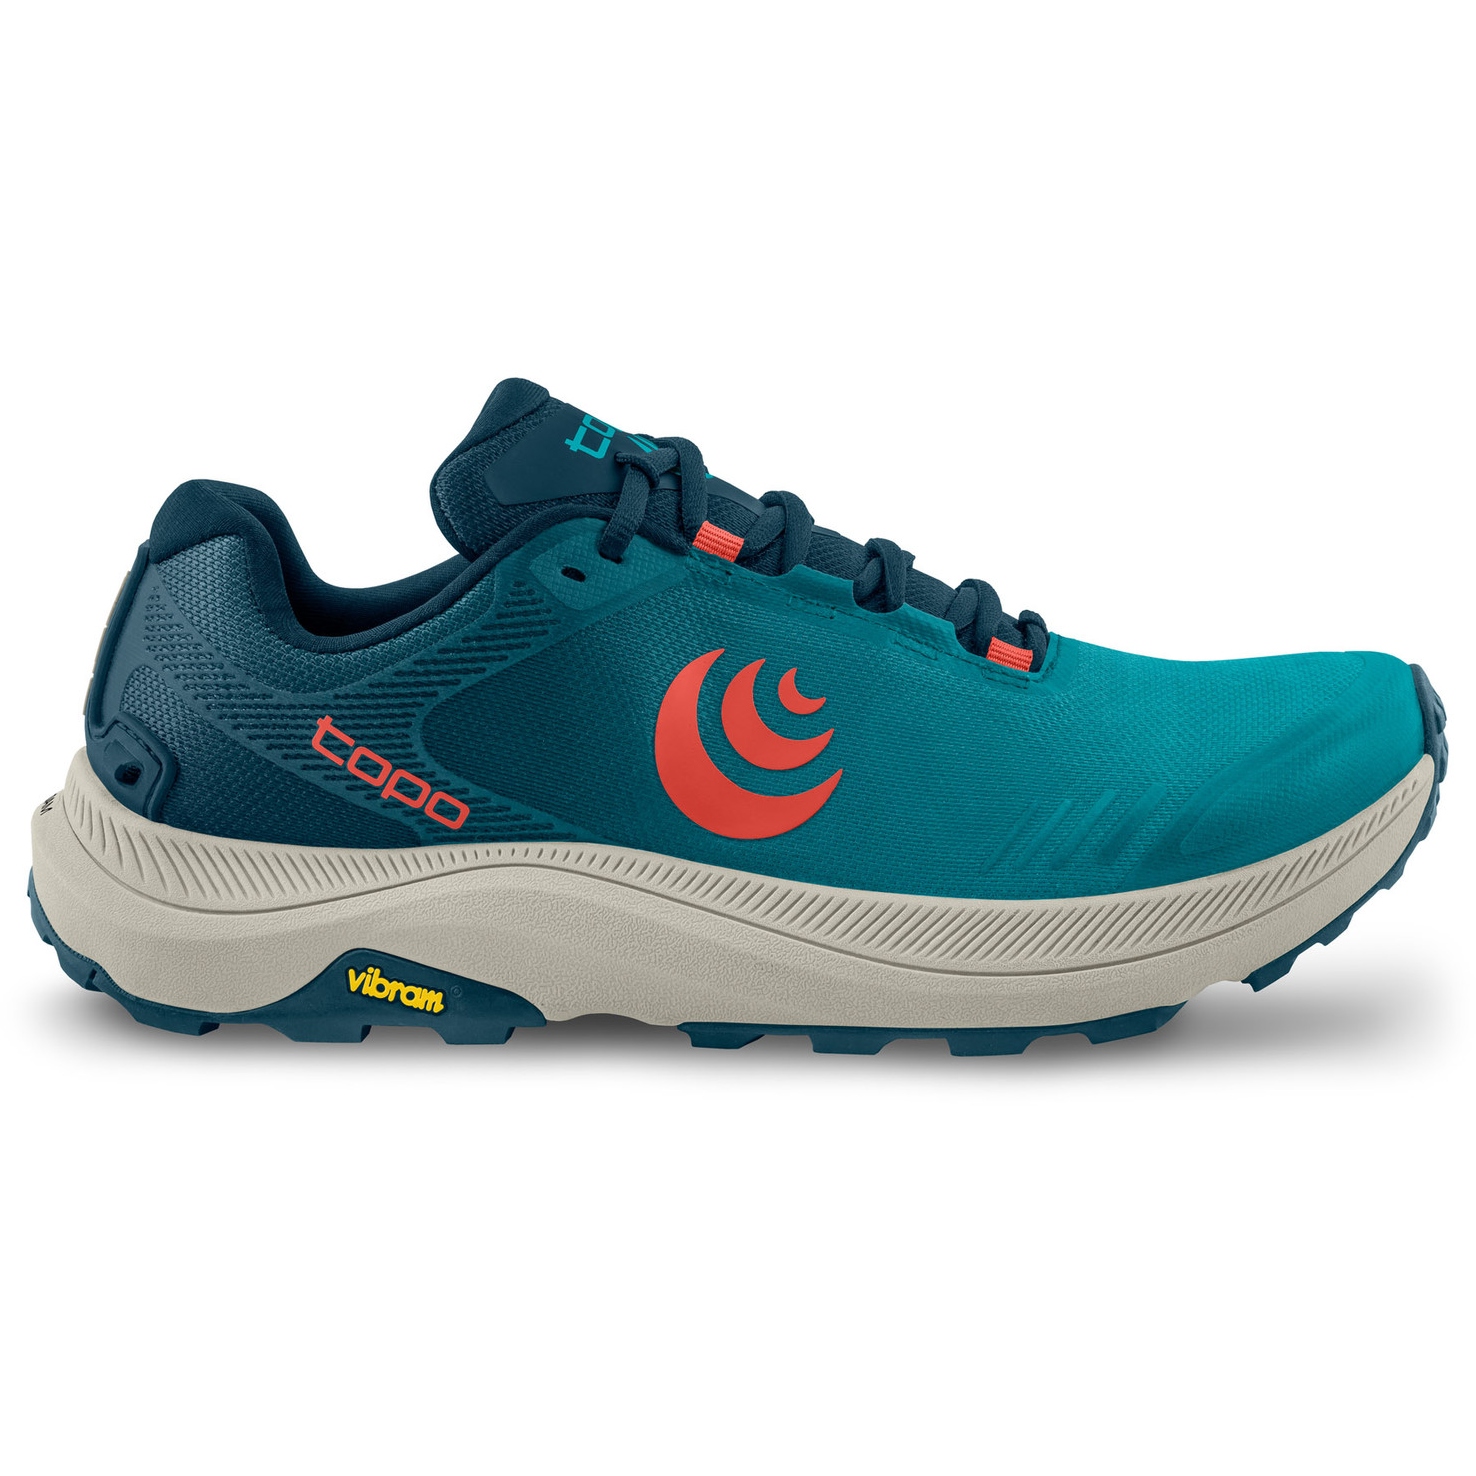 Produktbild von Topo Athletic MT-5 Trail Laufschuhe Herren - blau/rot